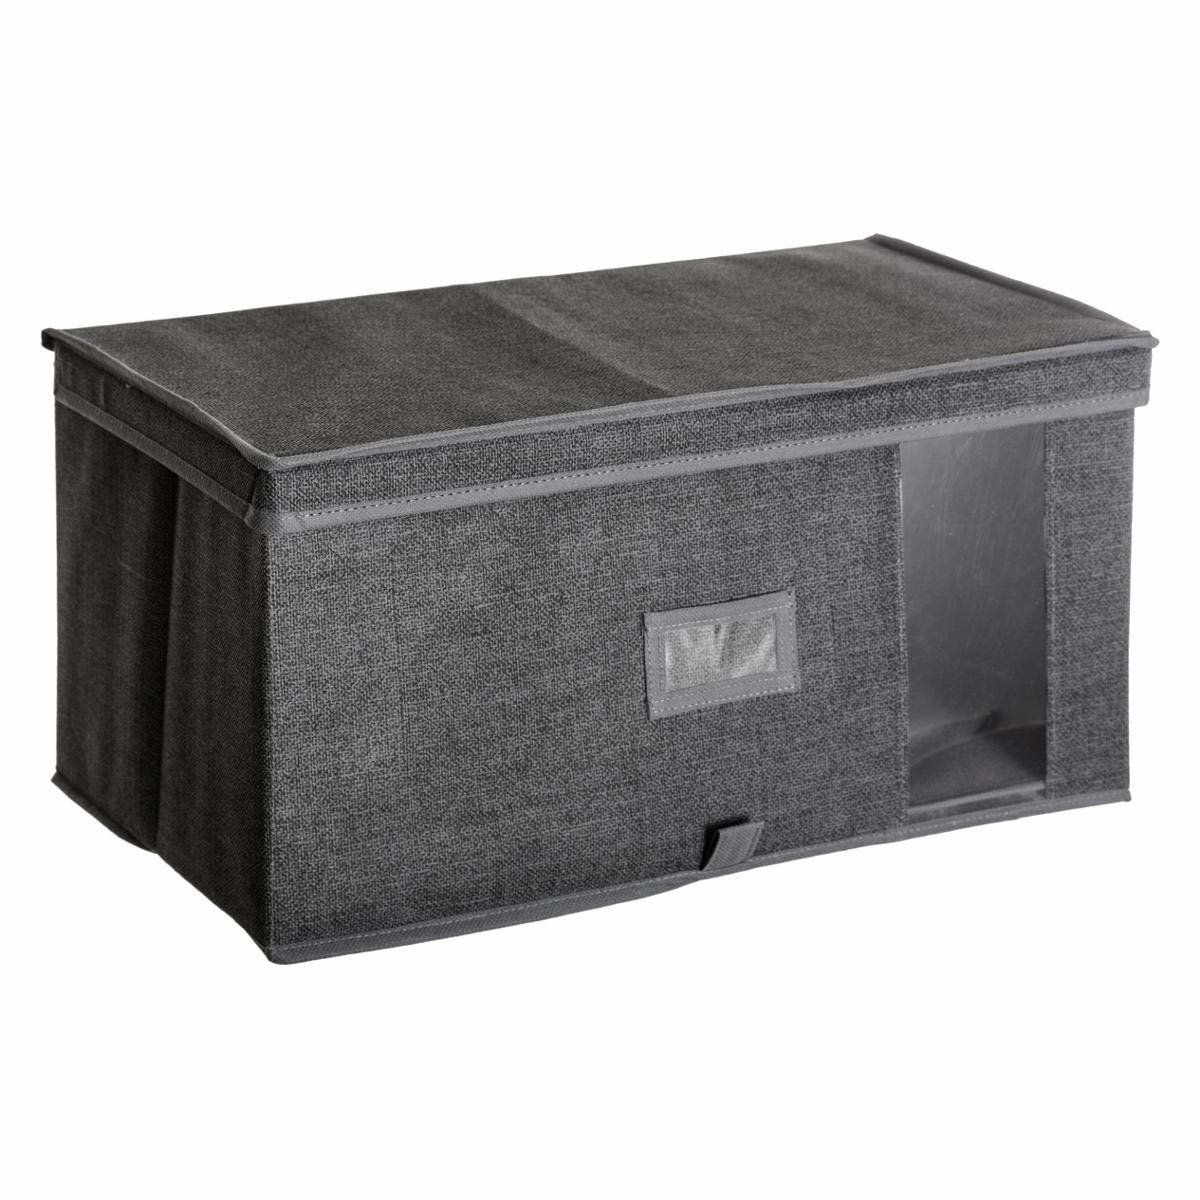 5five Simply Smart Úložný box, textilní úložný box, 50x30x25cm, tmavě šedý - EDAXO.CZ s.r.o.